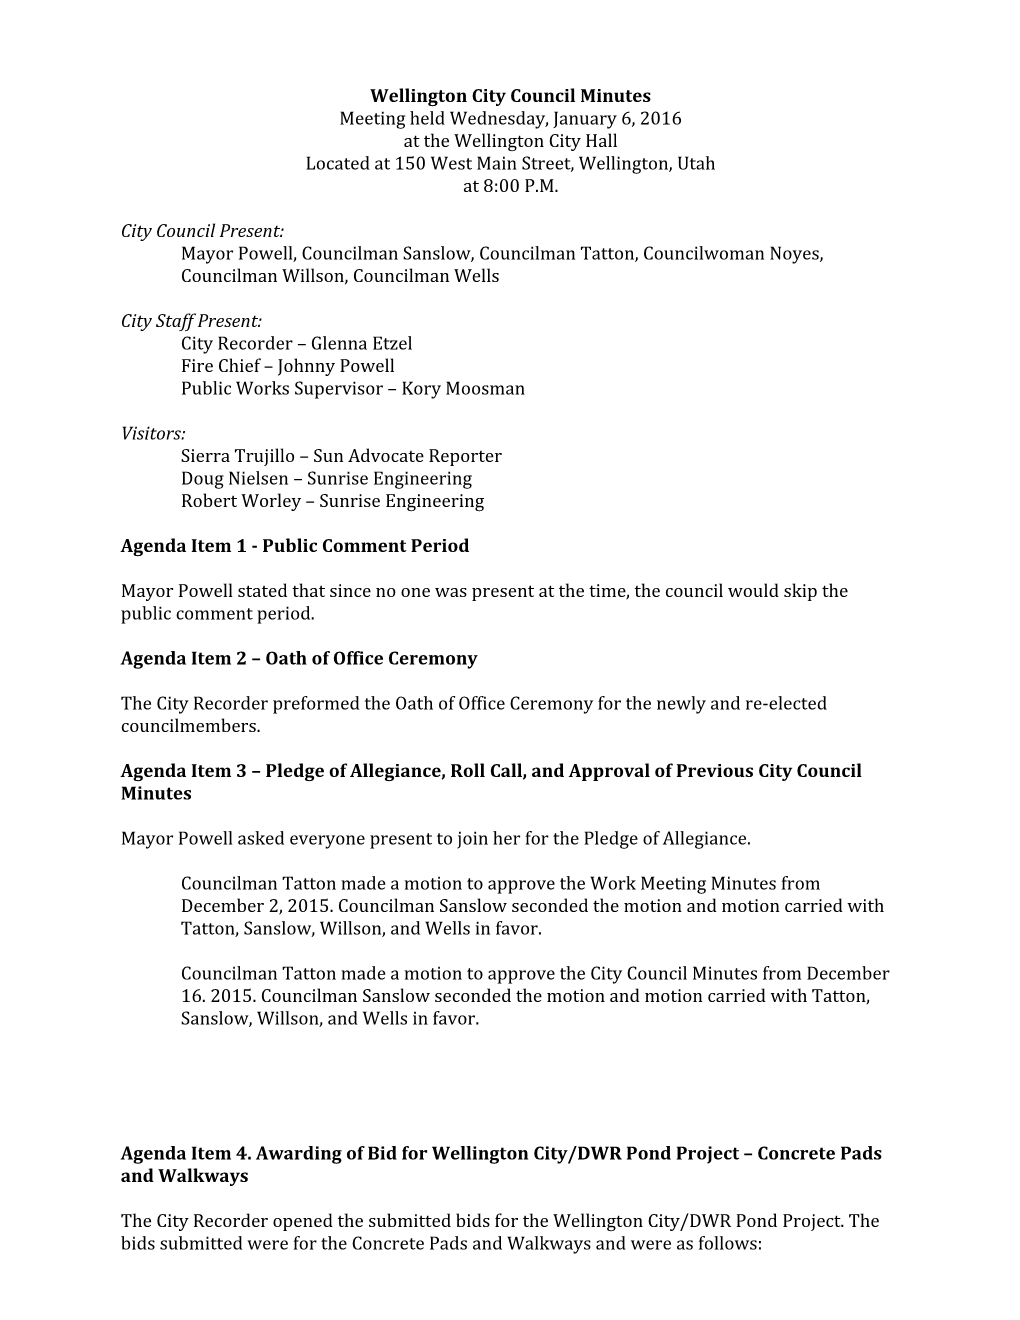 Wellington City Council Minutes s2